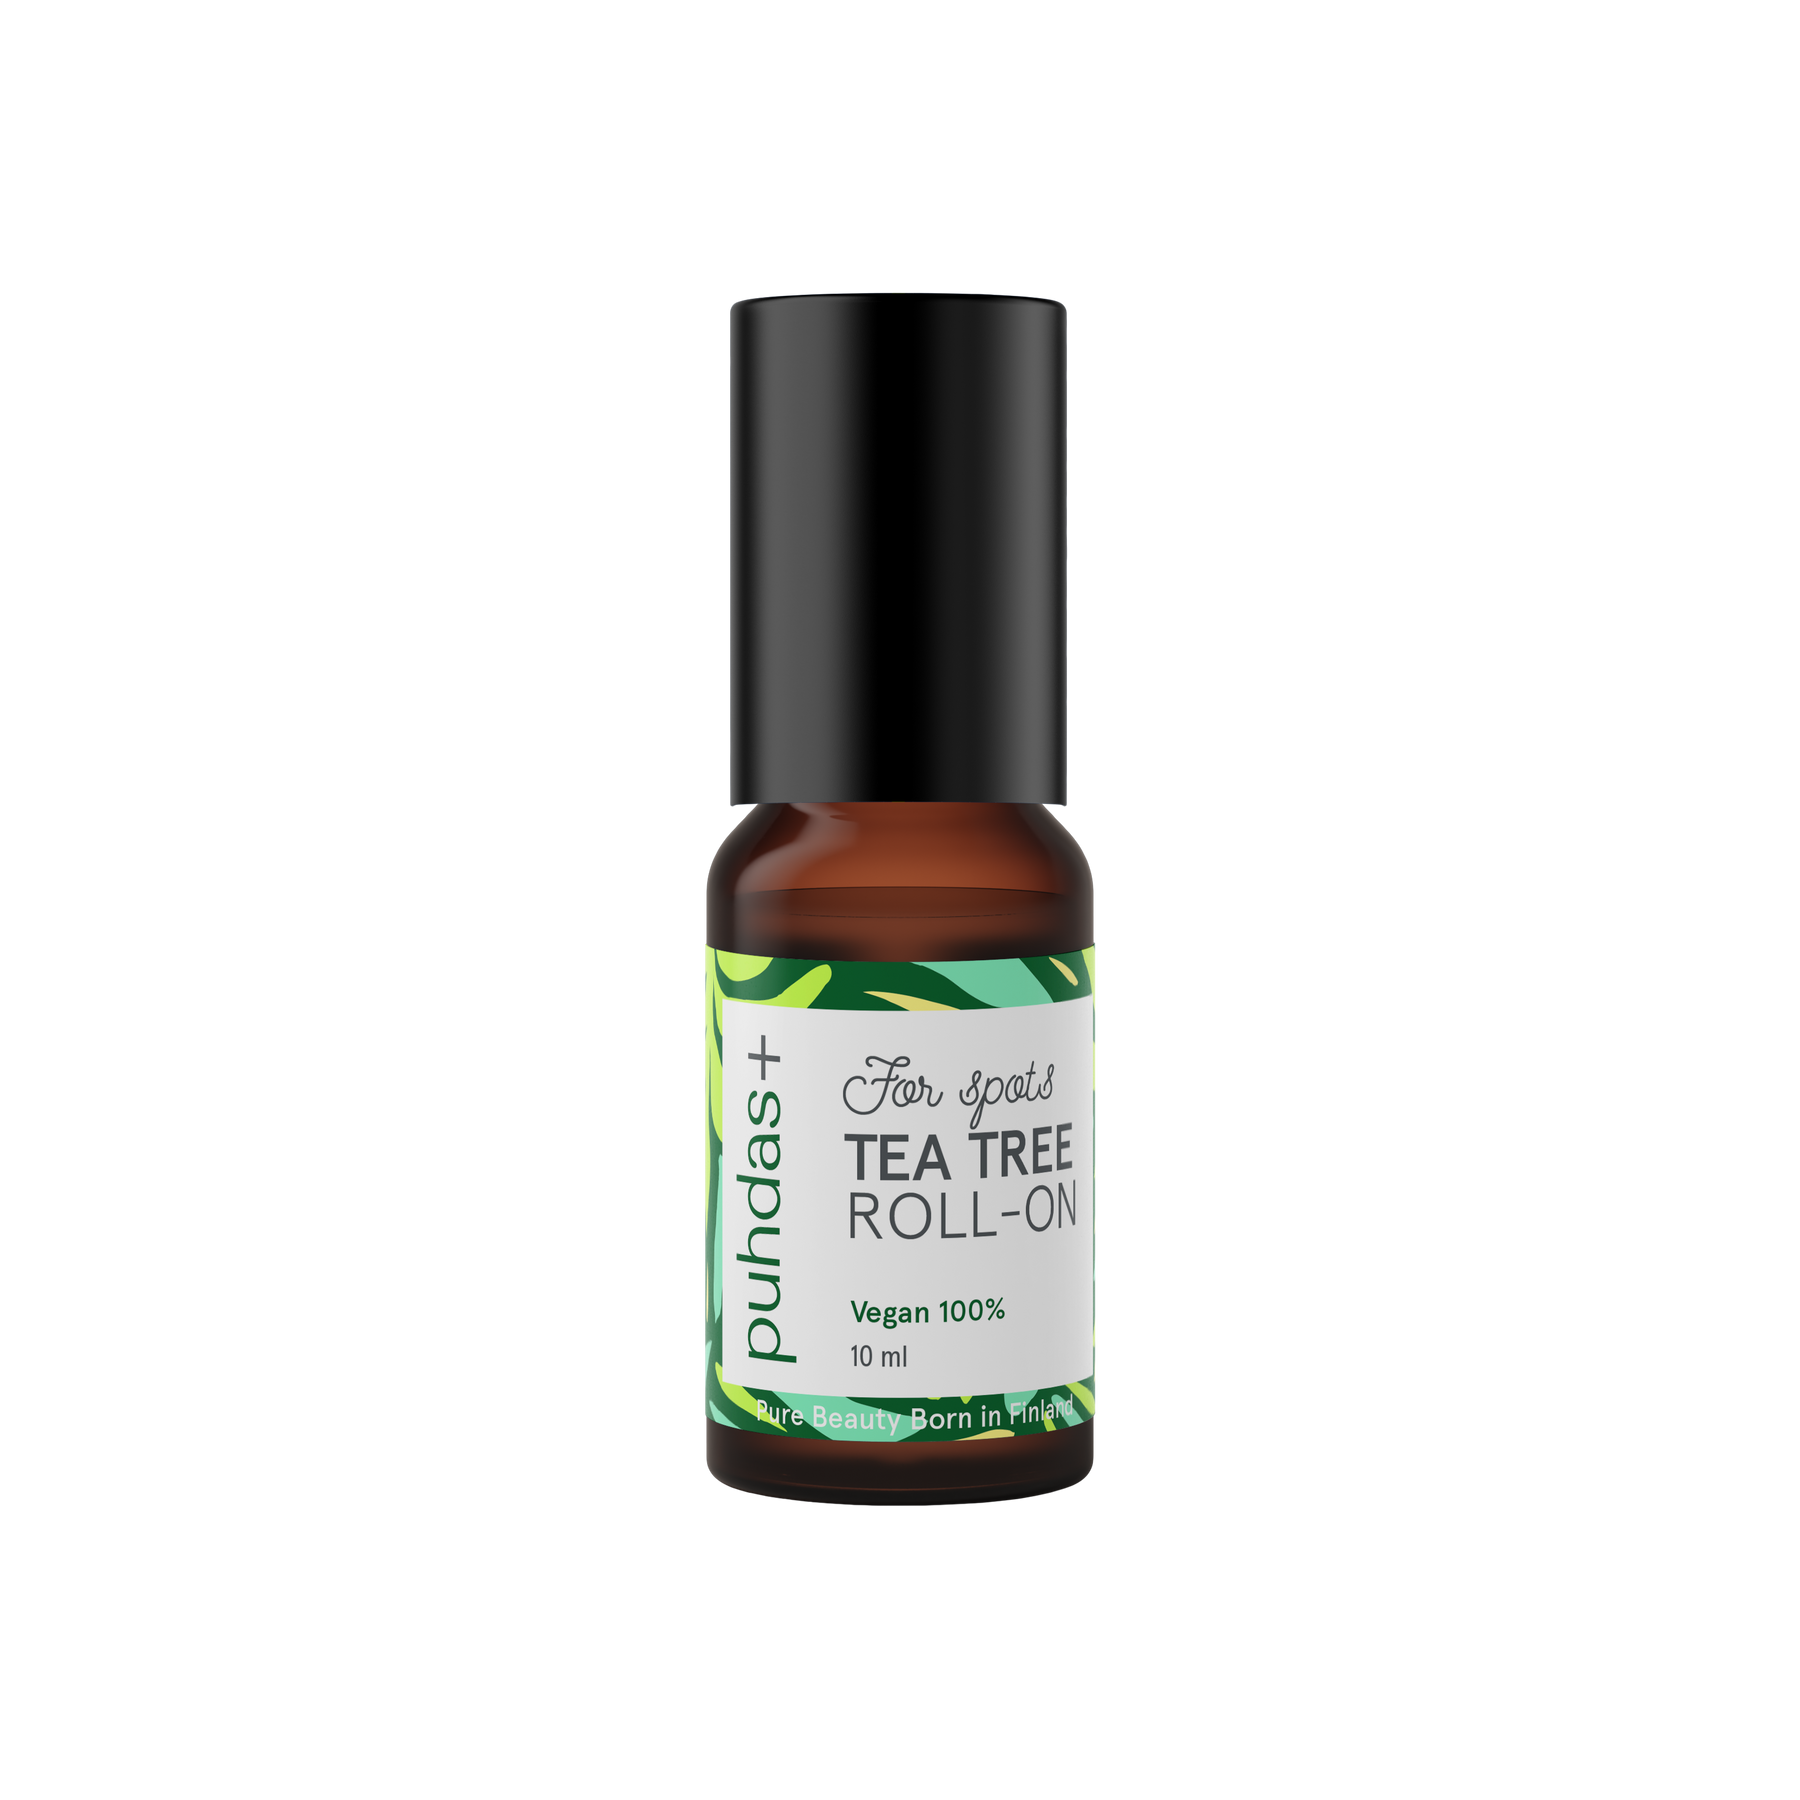 Puhdas+ Tea Tree Roll-On - Teepuuöljy 10 ml